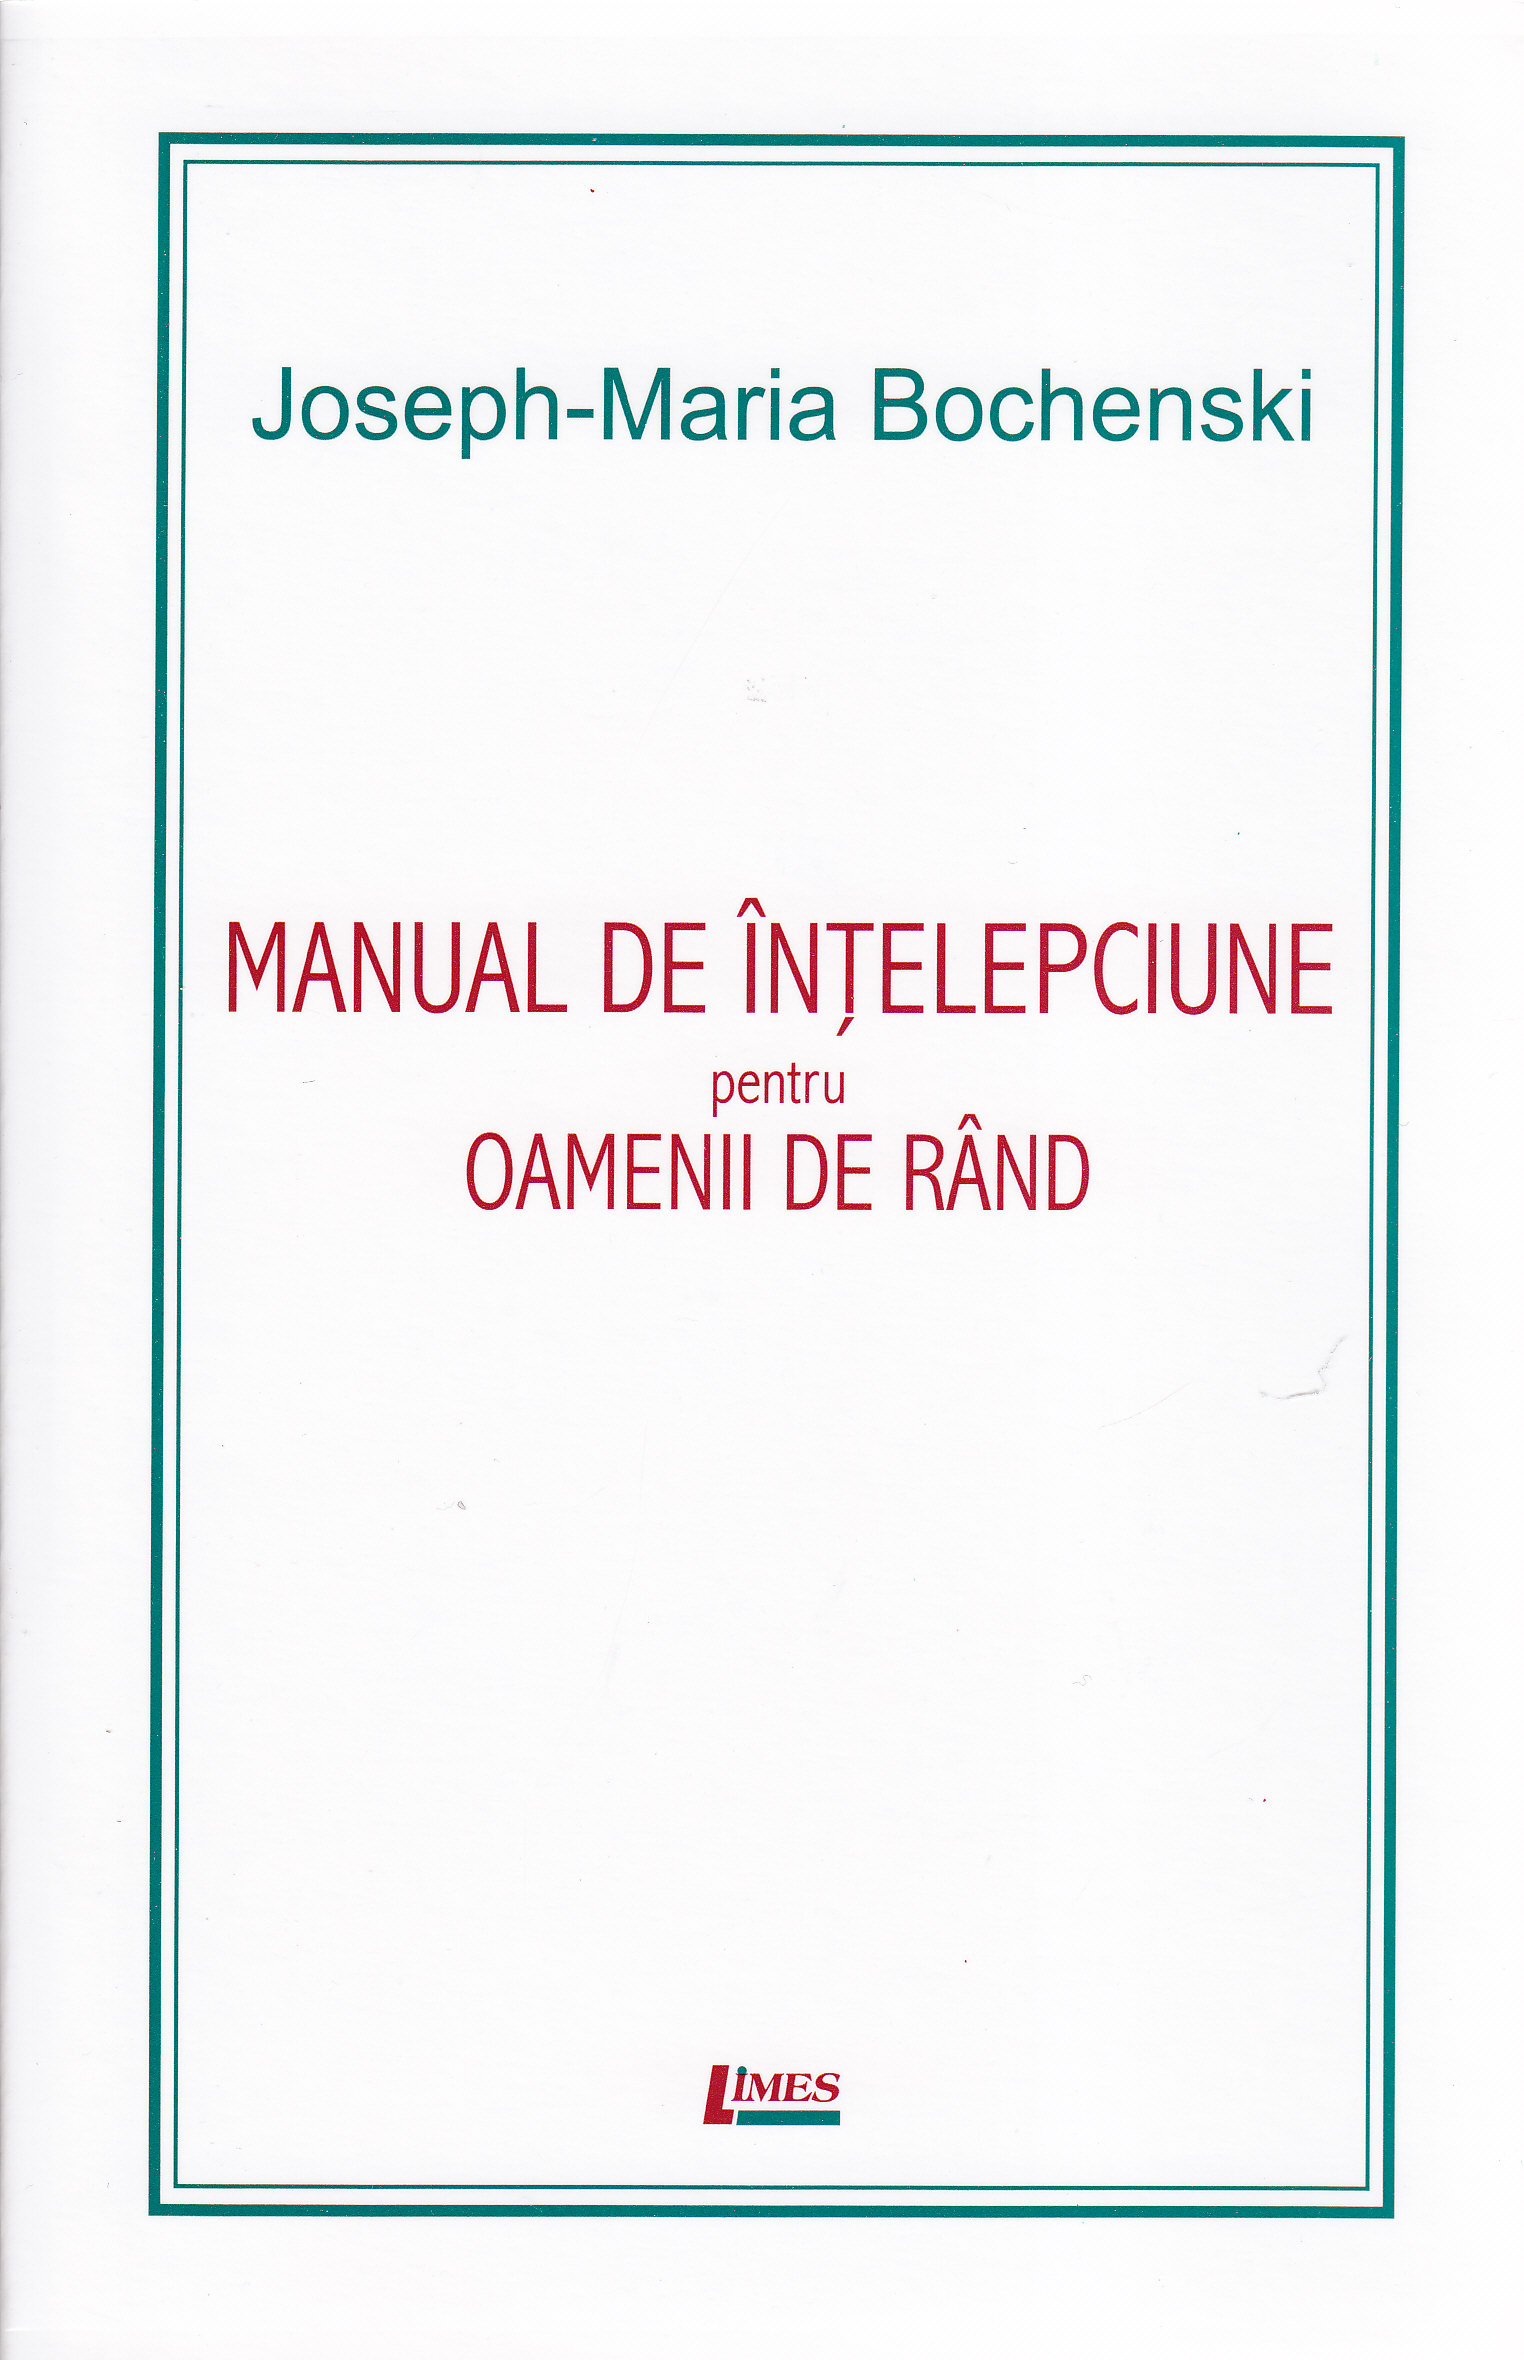 Manual de intelepciune pentru oamenii de rand ed. 4 - Joseph-Maria Bochenski